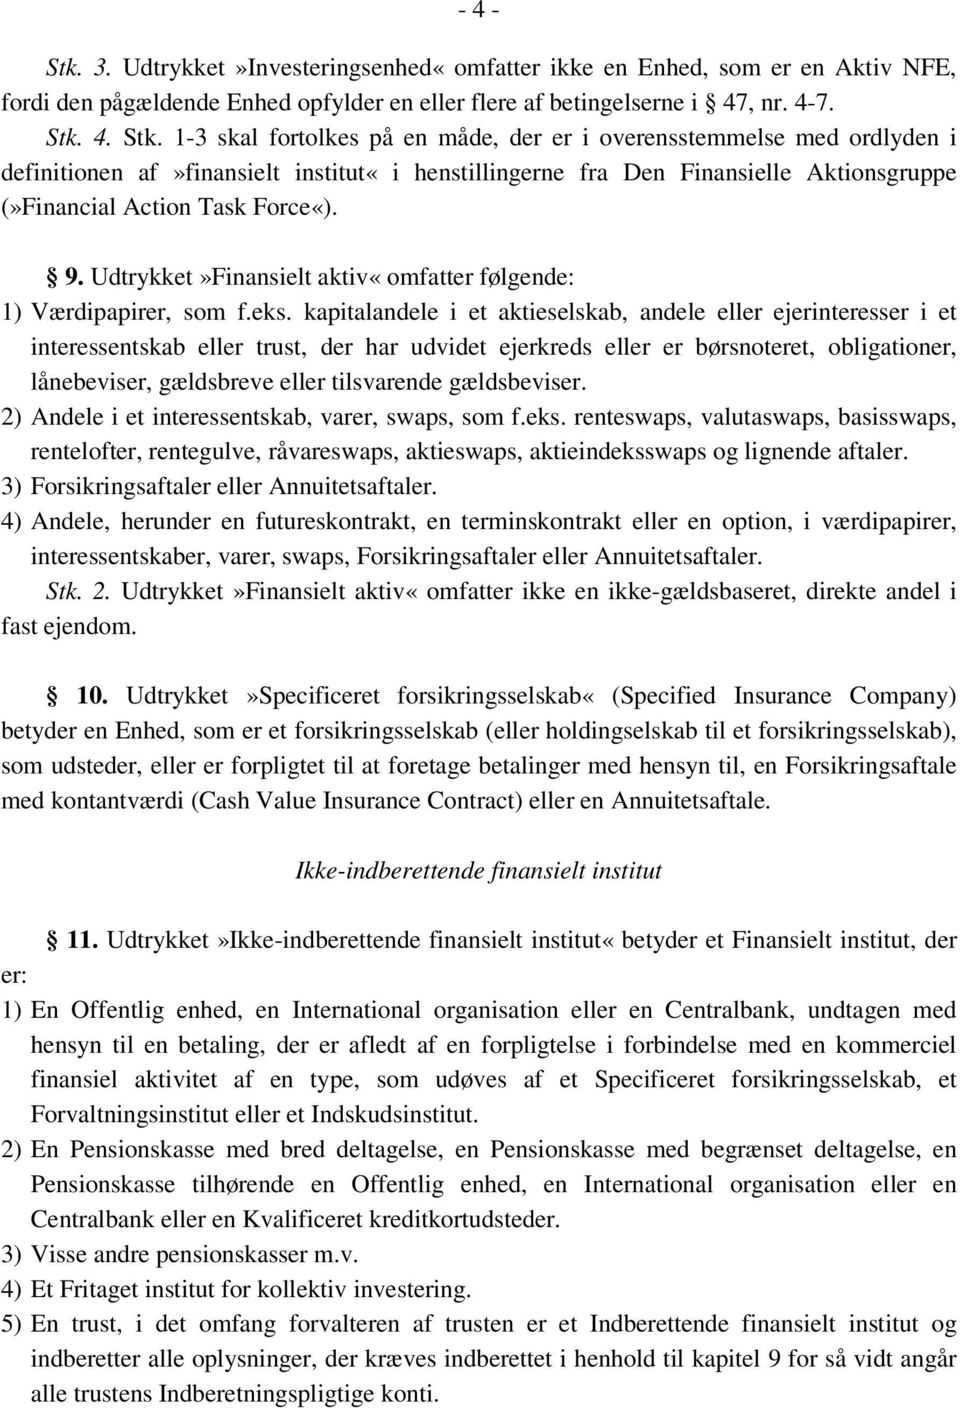 4. Stk. 1-3 skal fortolkes på en måde, der er i overensstemmelse med ordlyden i definitionen af»finansielt institut«i henstillingerne fra Den Finansielle Aktionsgruppe (»Financial Action Task Force«).